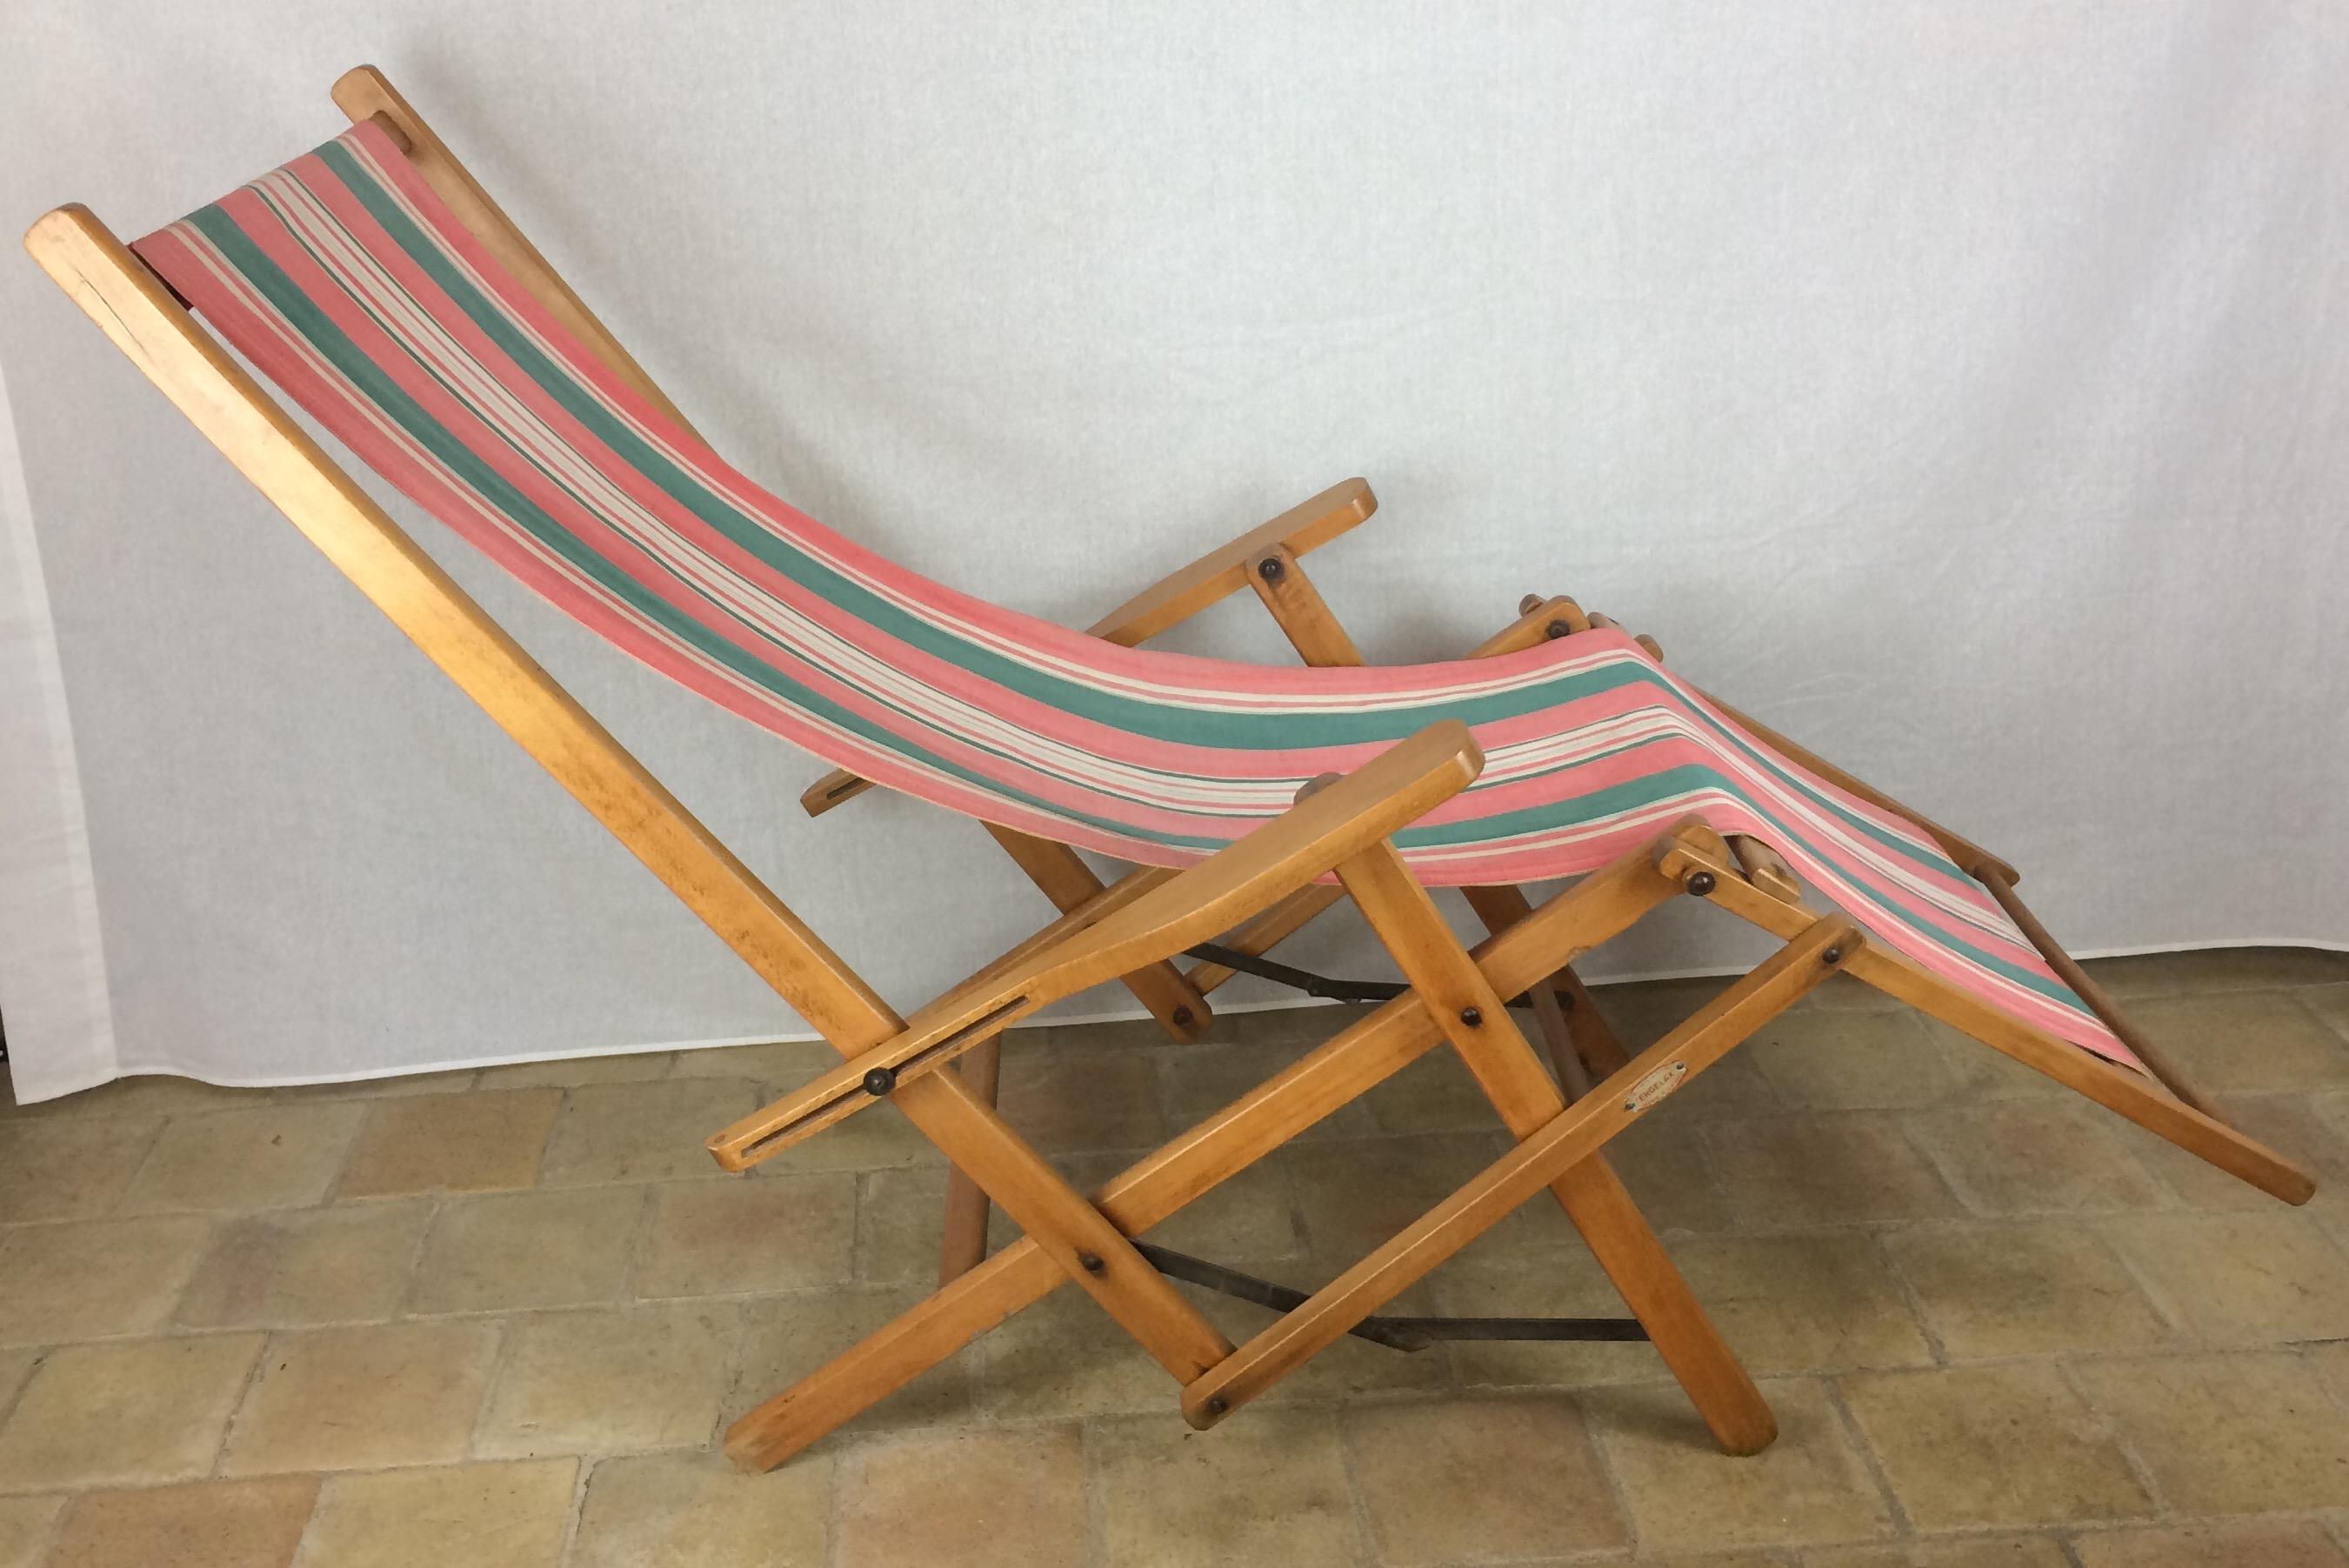 Amerikanischer faltbarer Leinenstuhl ERGELAX aus den 1950er Jahren, entworfen von R. Gleizes für RG. Trueing im Americana-Stil. 

Sehr einzigartiger und seltener Vintage American Folded Canvas Lounge Chair. Abnehmbare Leinwand für einfache